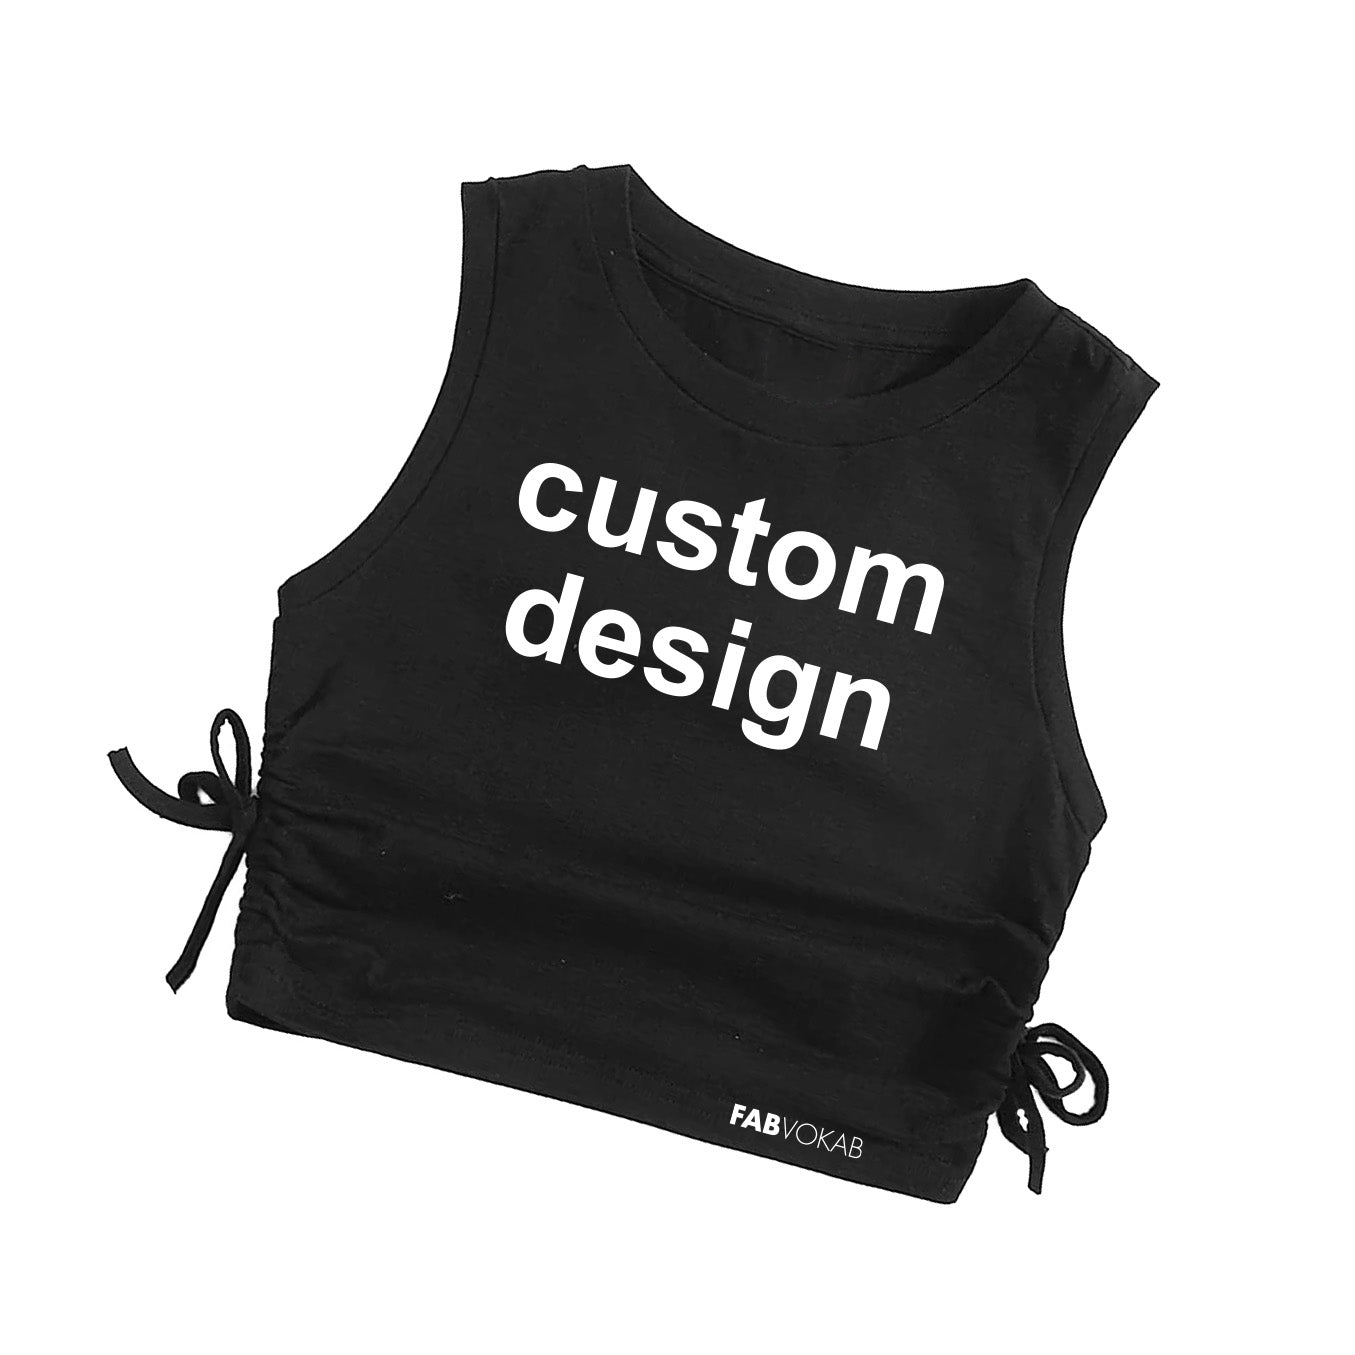 Custom Design, Girls Crop Top